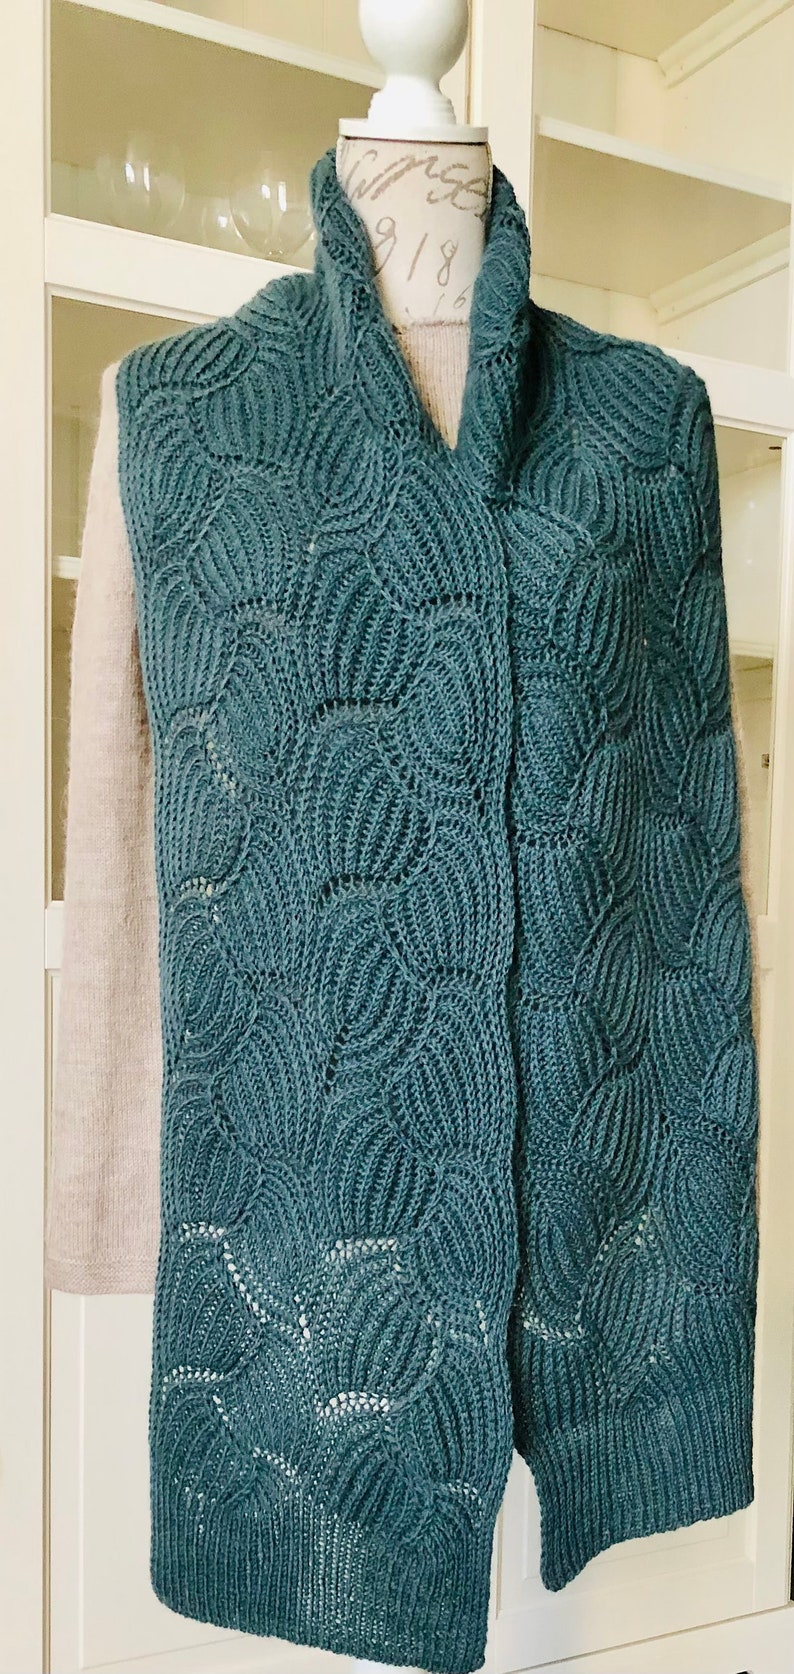 Écharpe étole femme tricotée motif principal brioche en mélange laine alpaga taille M image 3